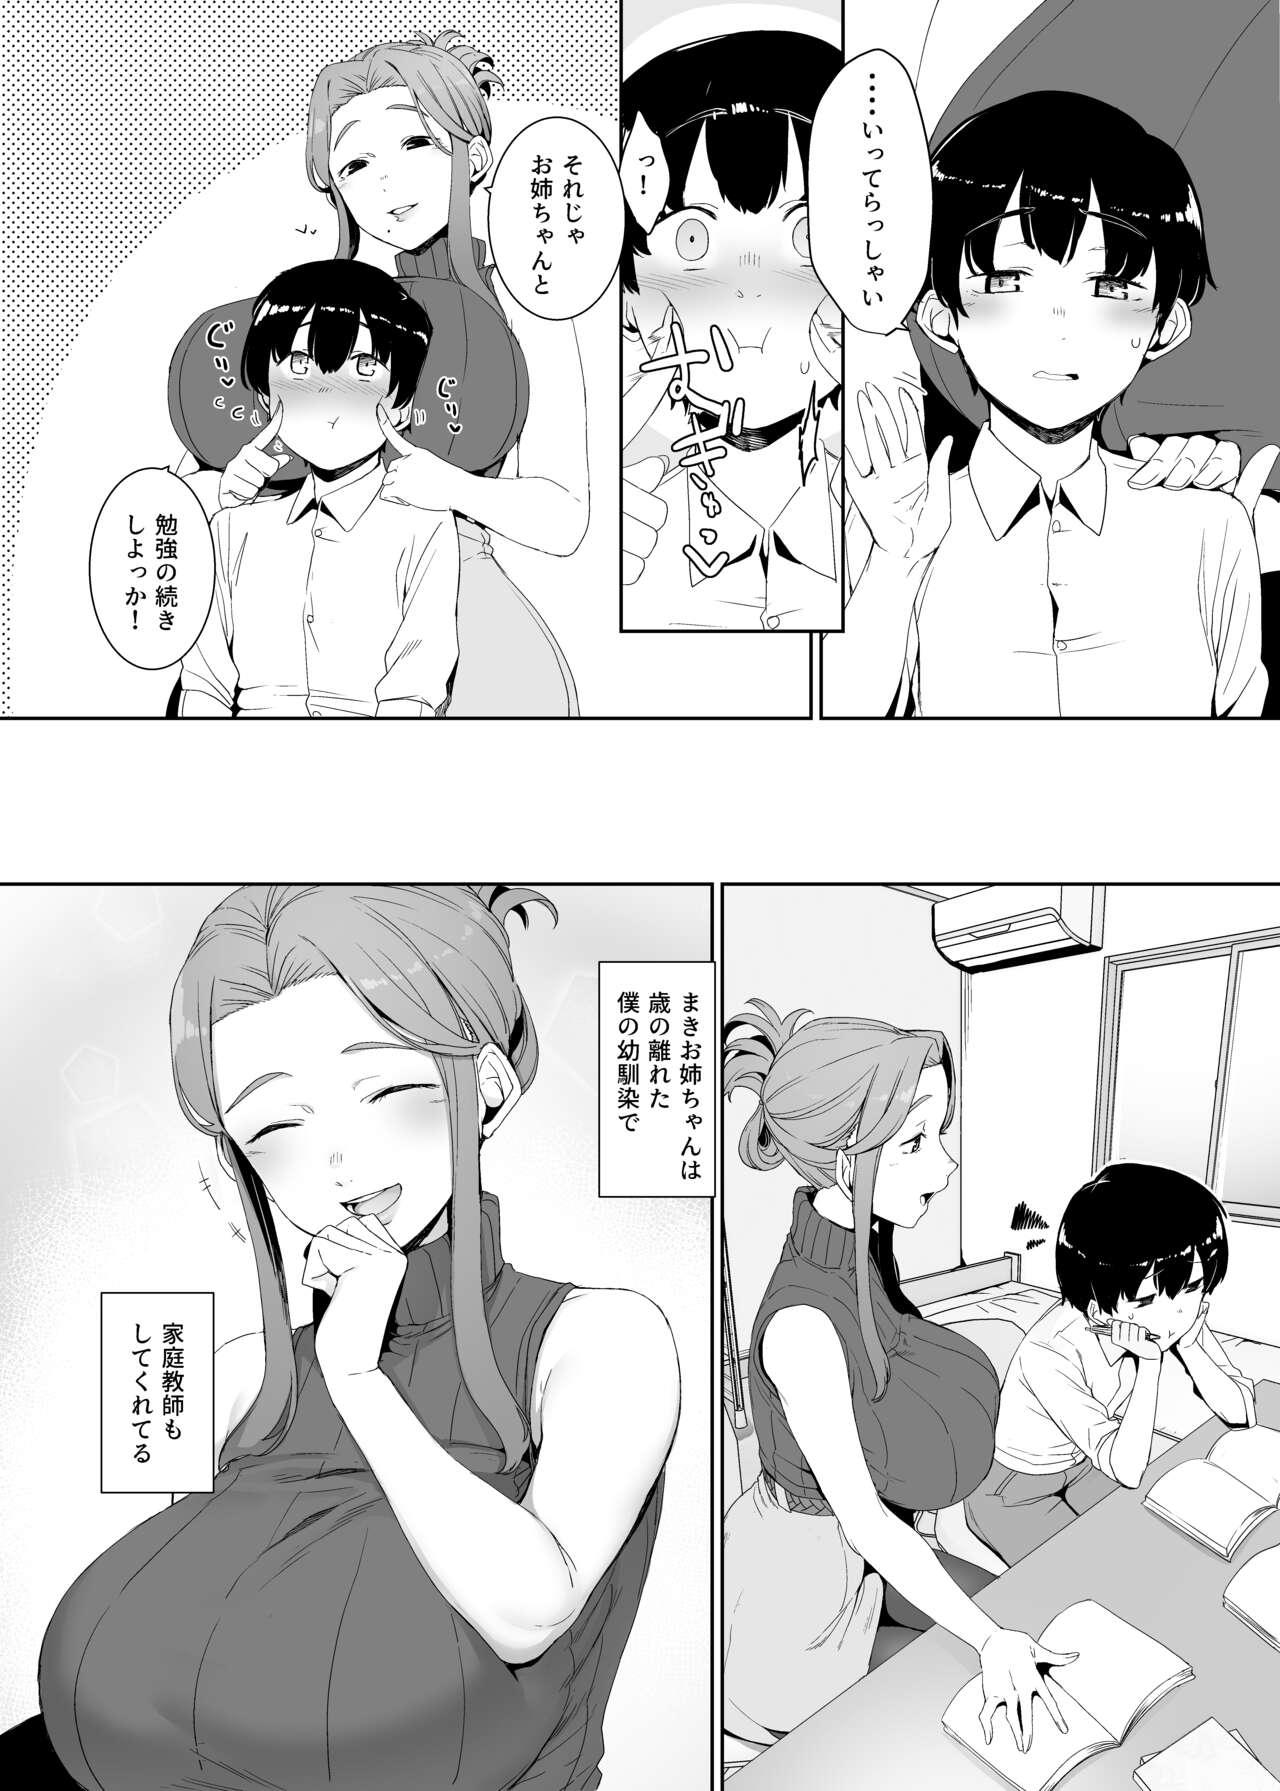 Bisexual Rinraku no Susu me - Original 18yo - Page 5